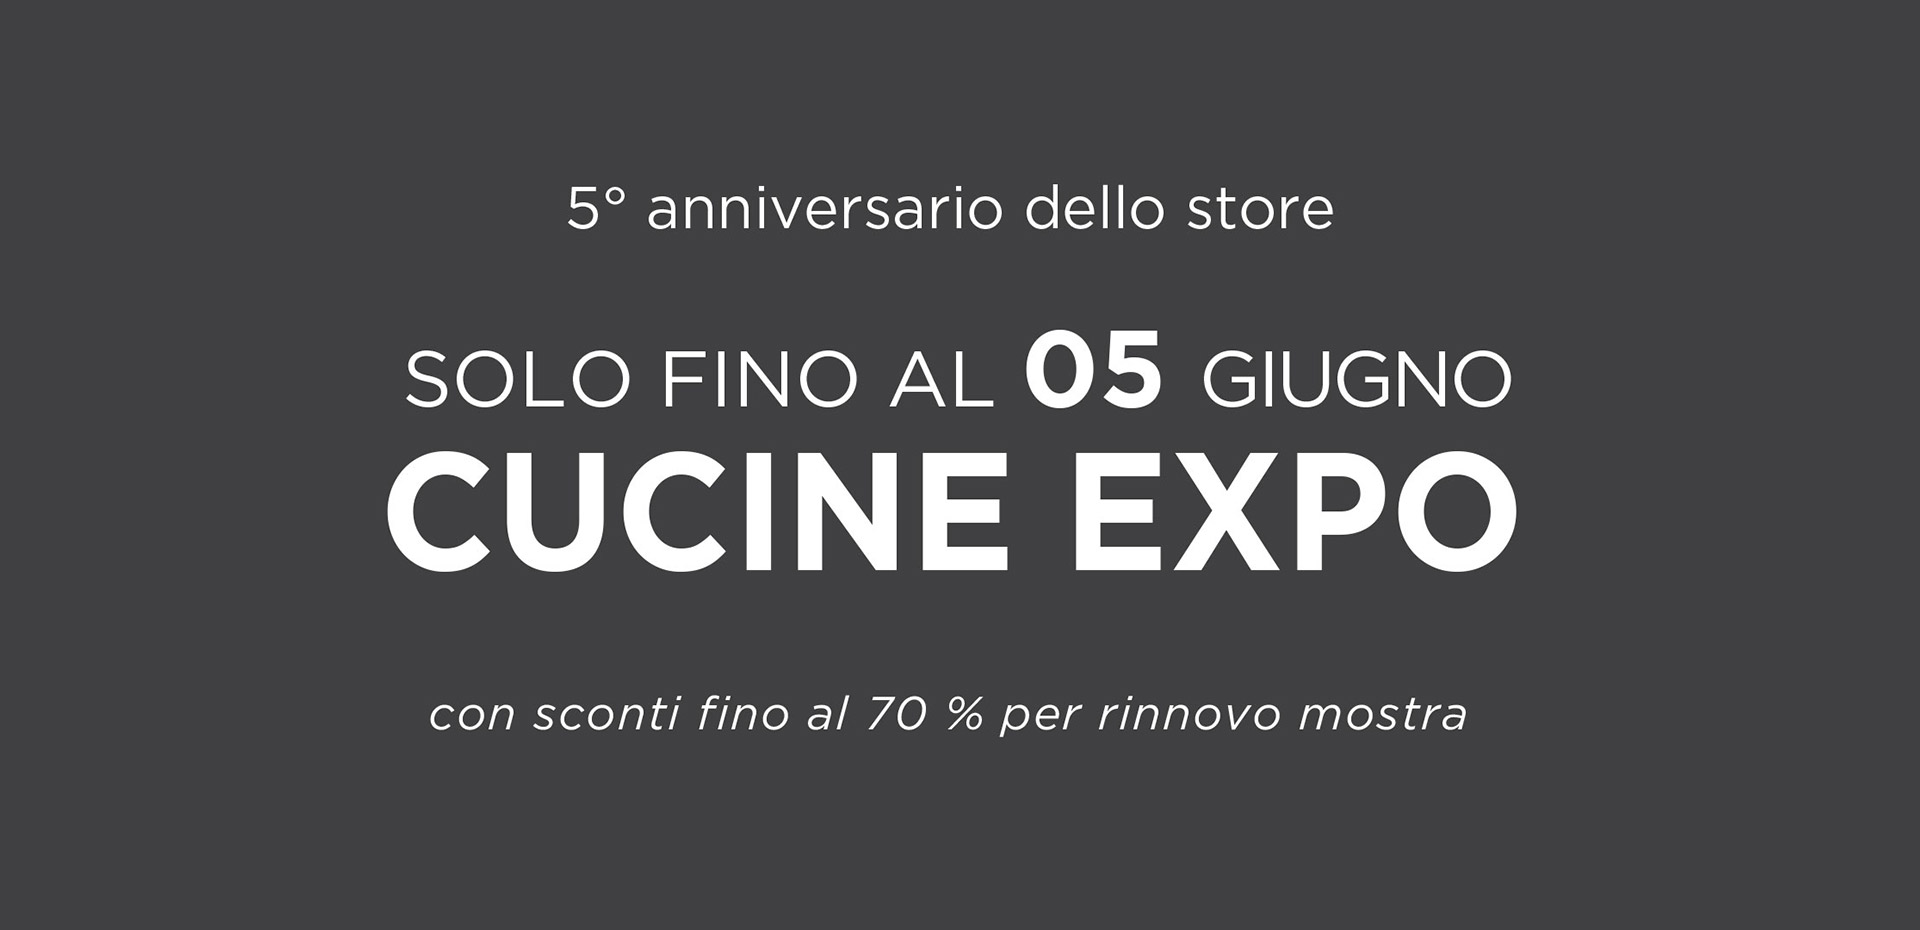 Festeggia con noi il 5° anniversario dello Store! Per te una promozione esclusiva valida fino al 5 giugno - LUBE CREO Store Guidonia (Roma)